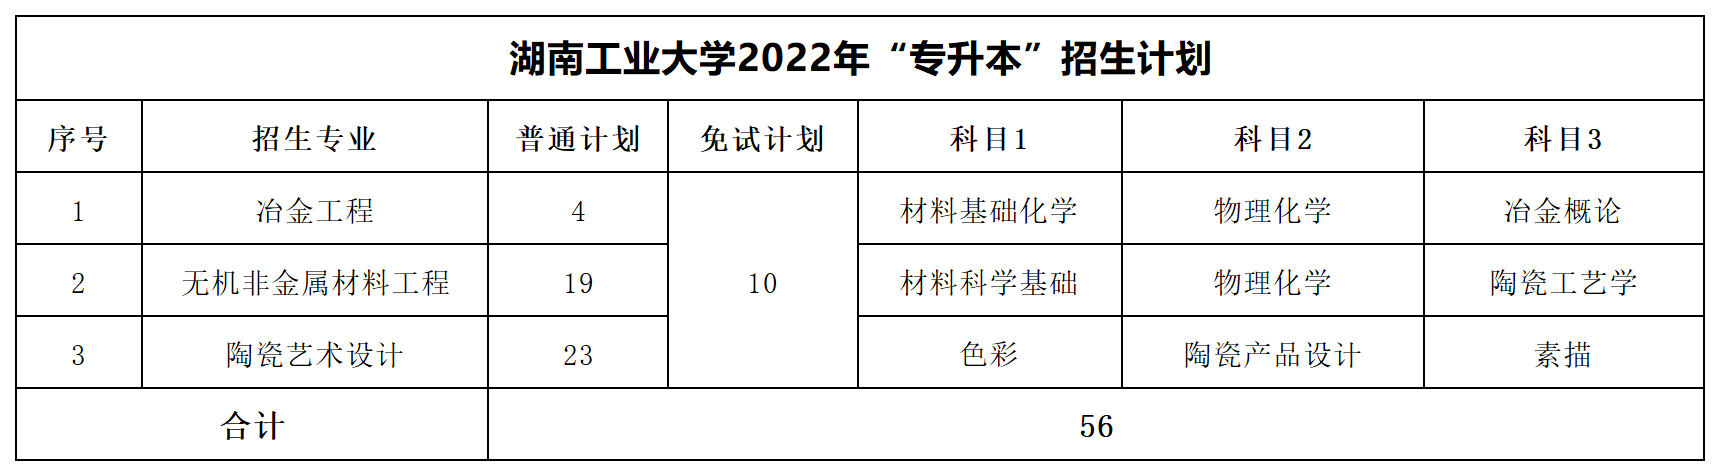 2022年湖南专升本招生数据汇总